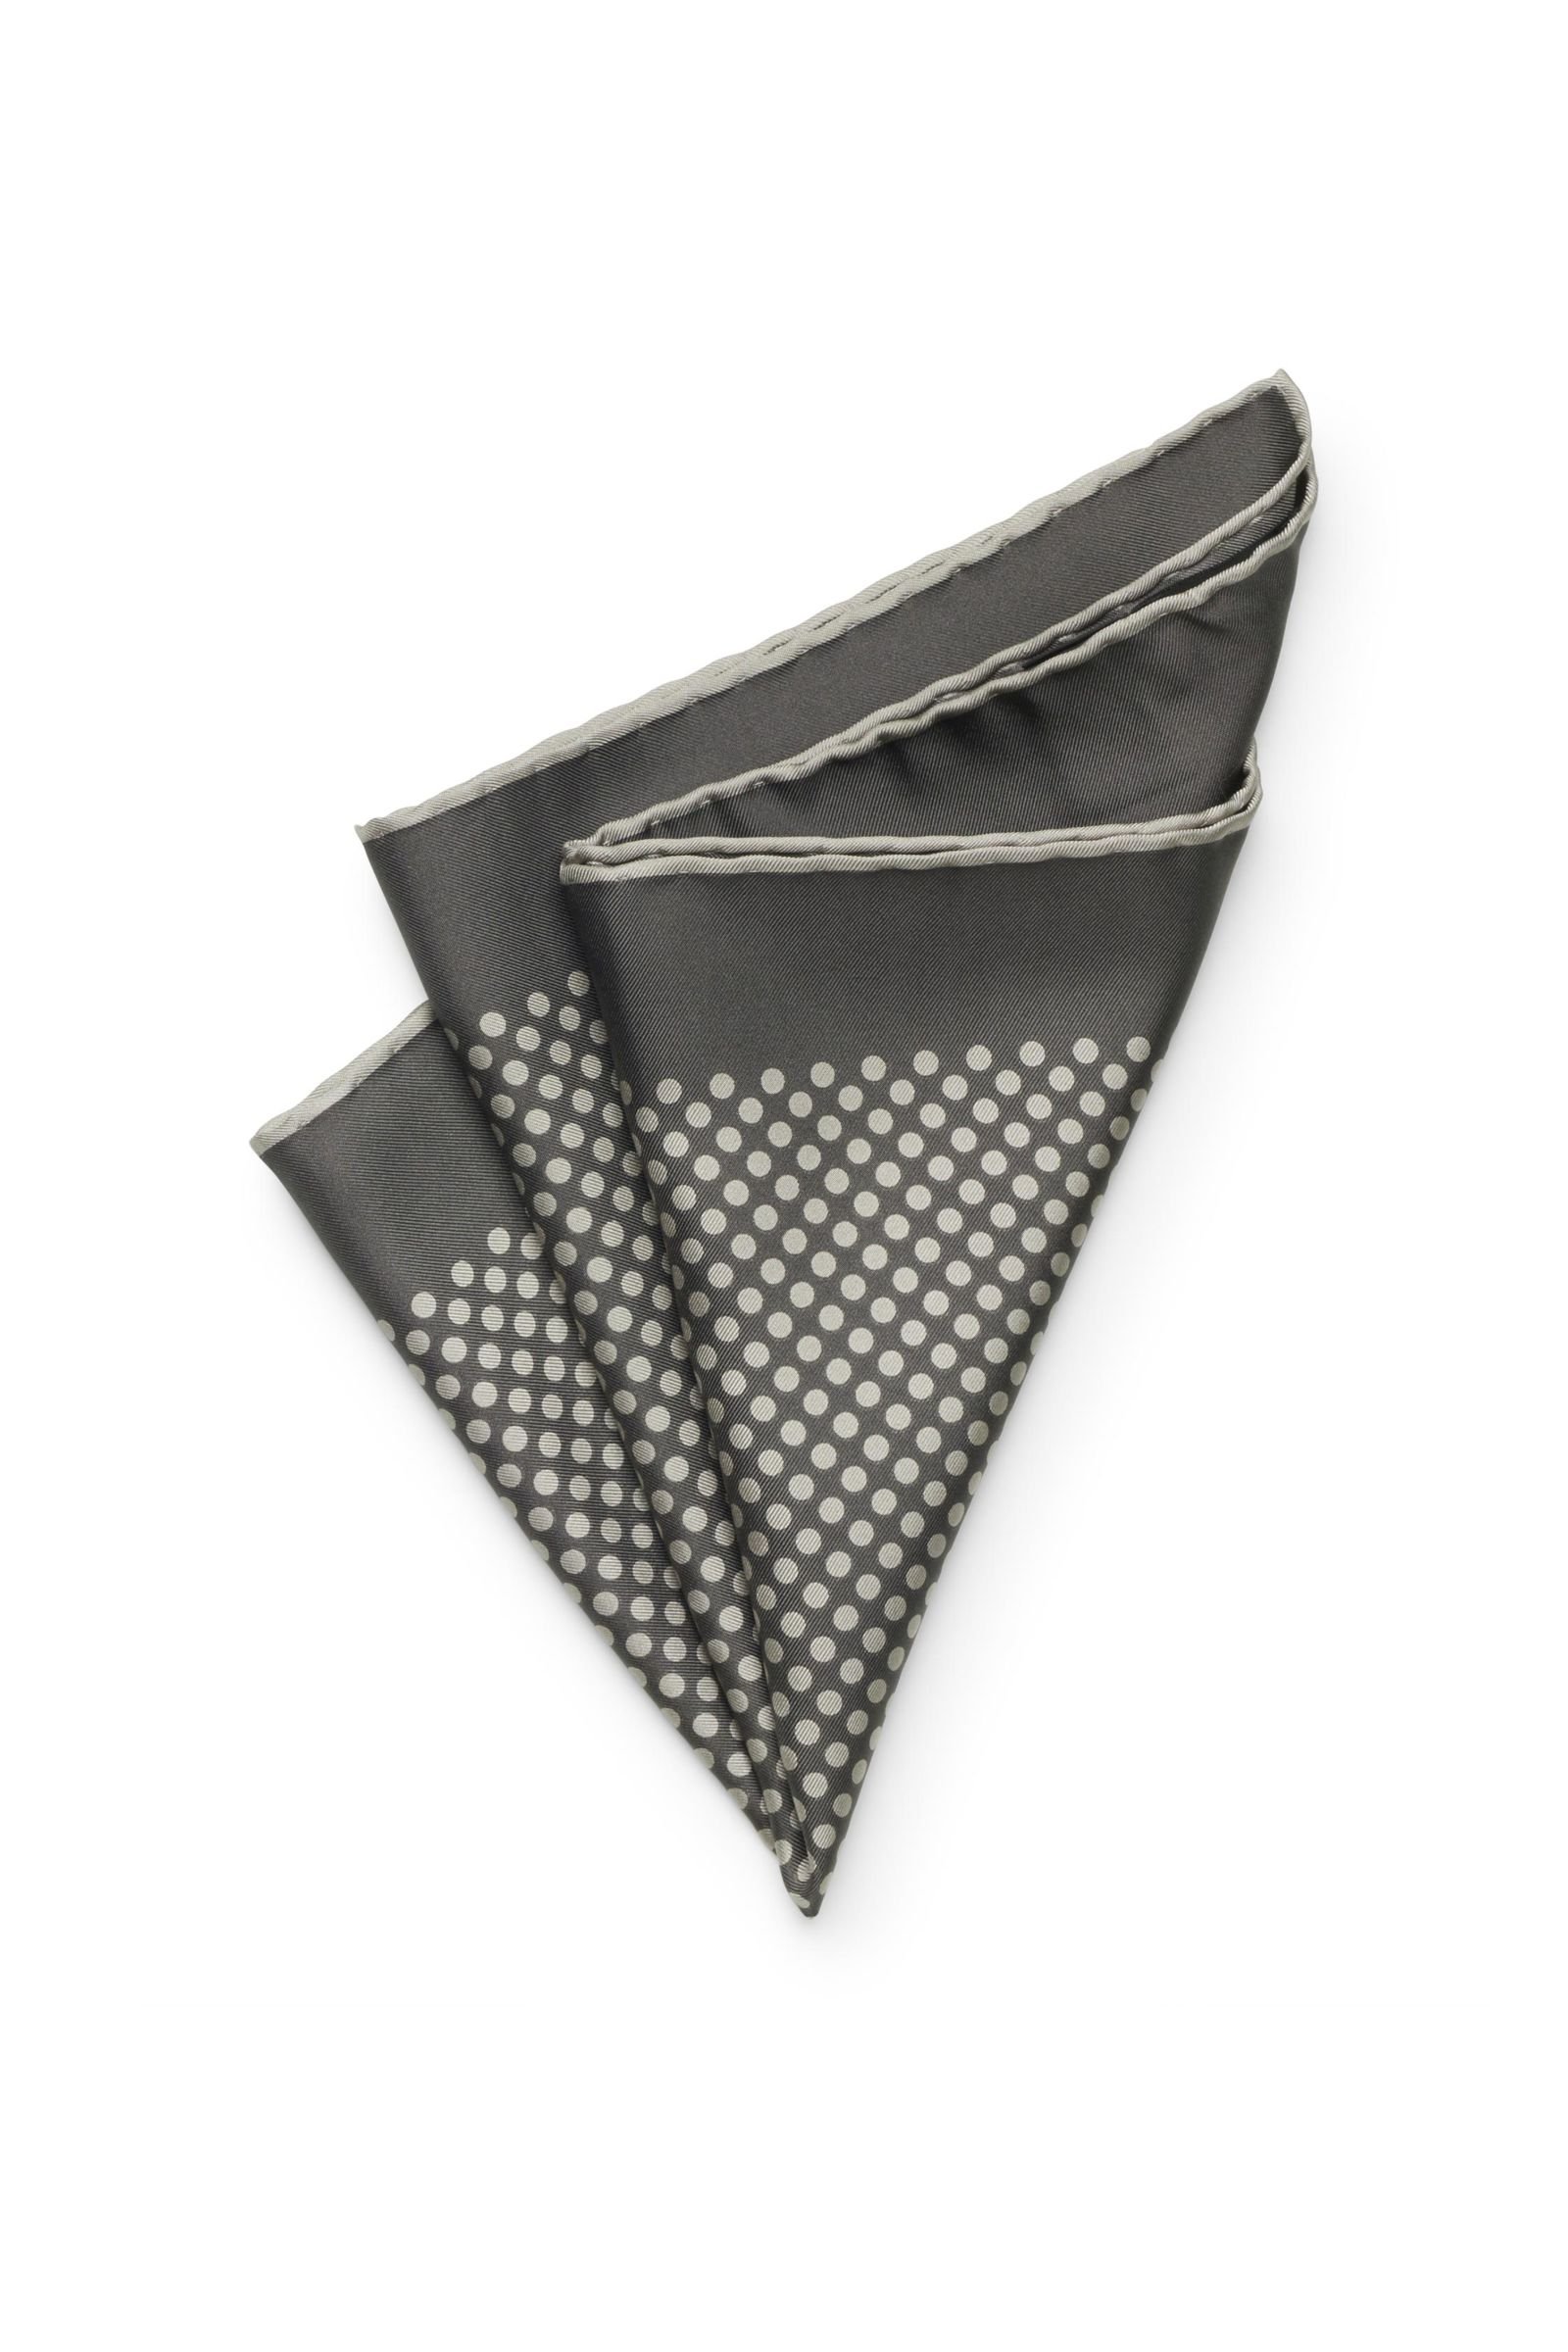 Pocket square dark grey, patterned